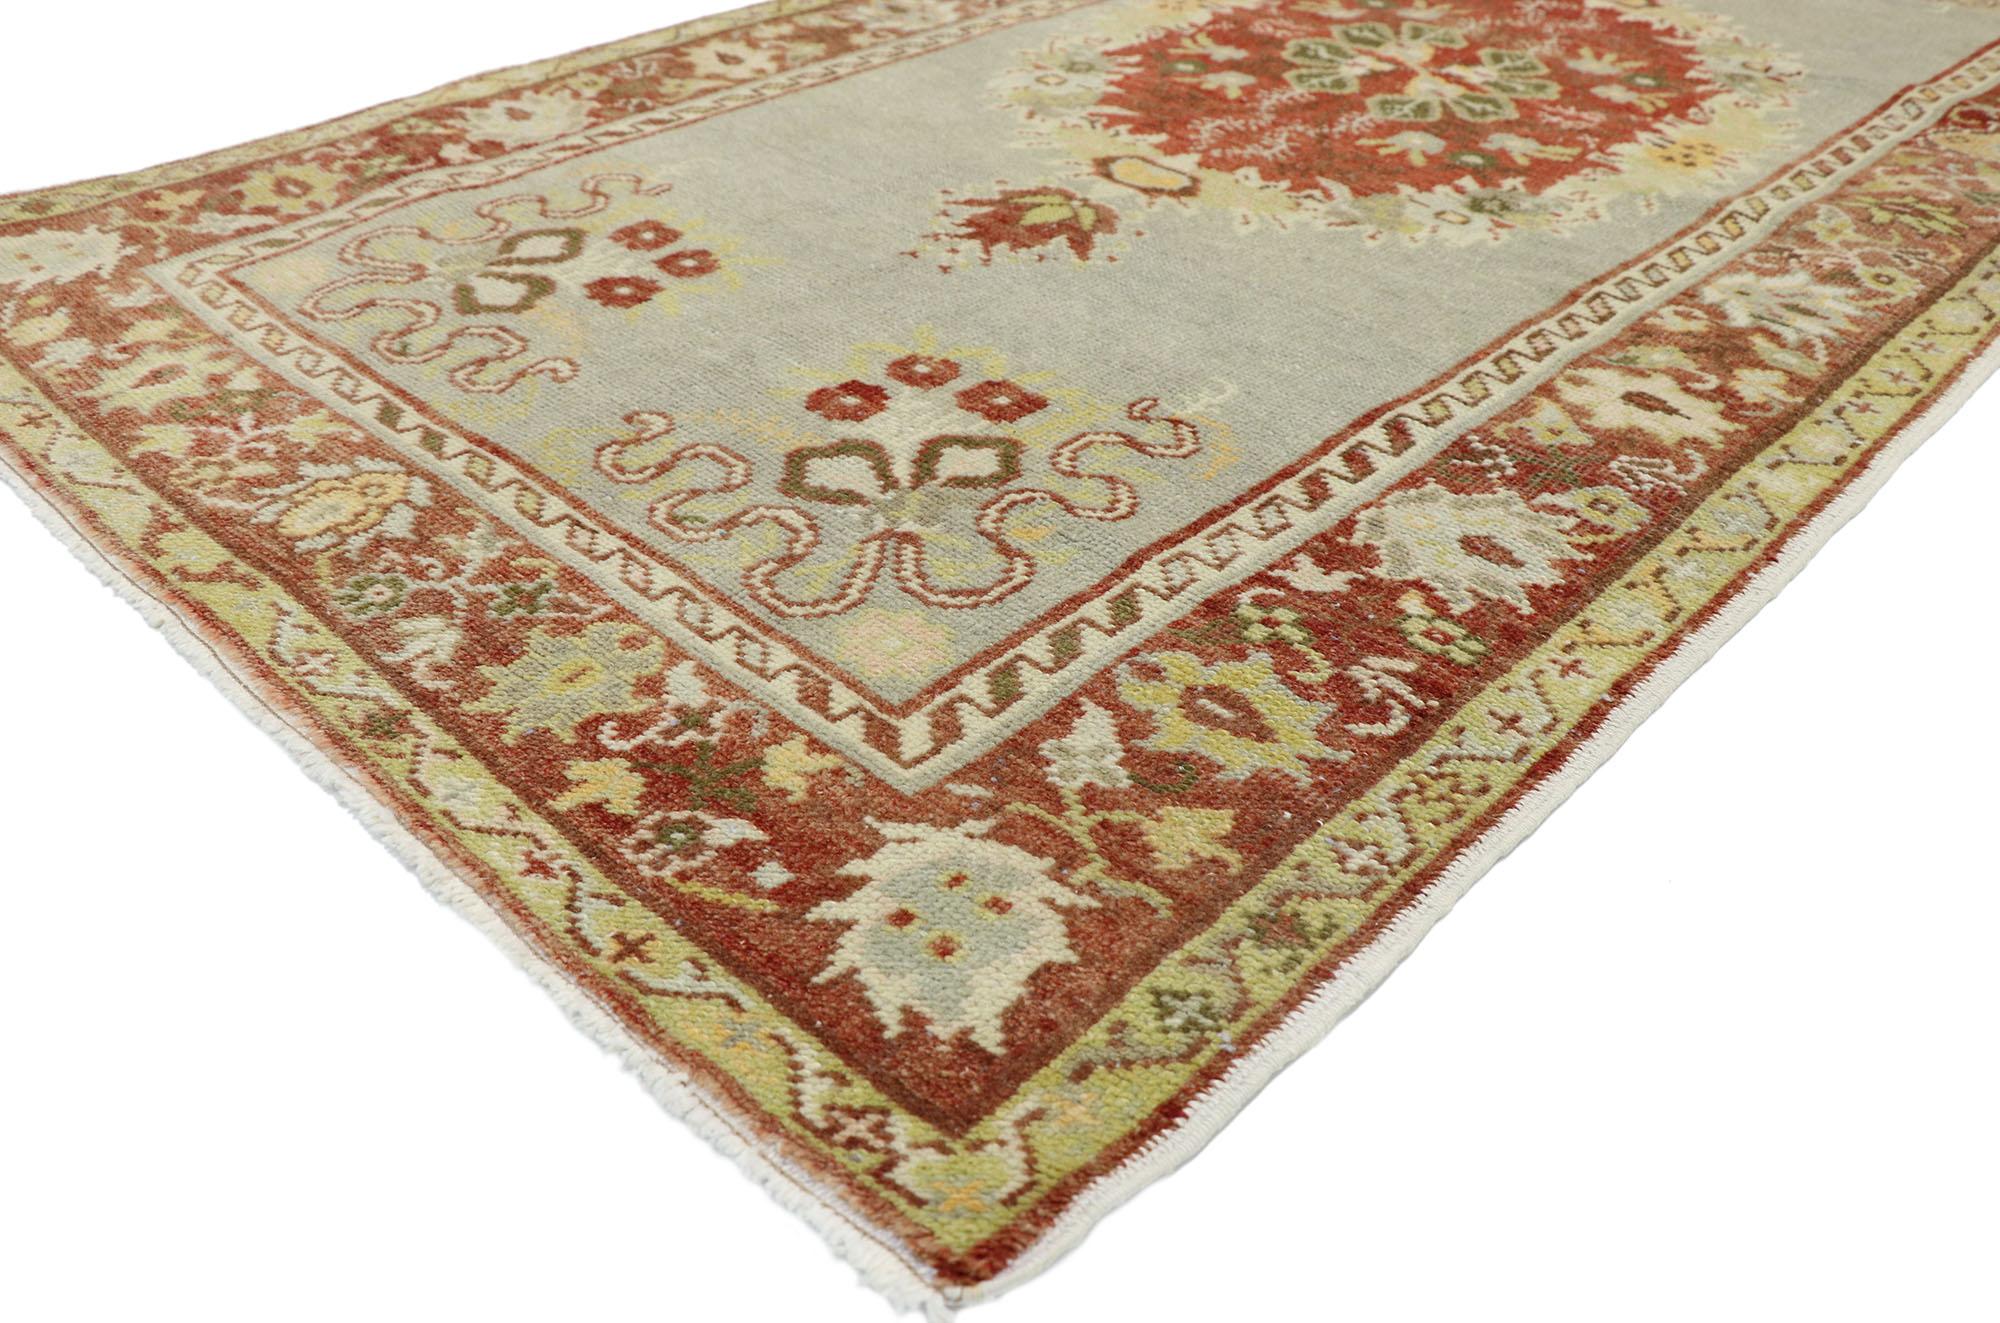 52746, tapis turc Oushak vintage en mauvais état, style géorgien rustique et romantique. Ce tapis d'accent turc Oushak, en laine nouée à la main, présente un médaillon central rond rempli de feuillage et de fleurs dans un champ ouvert gris clair.